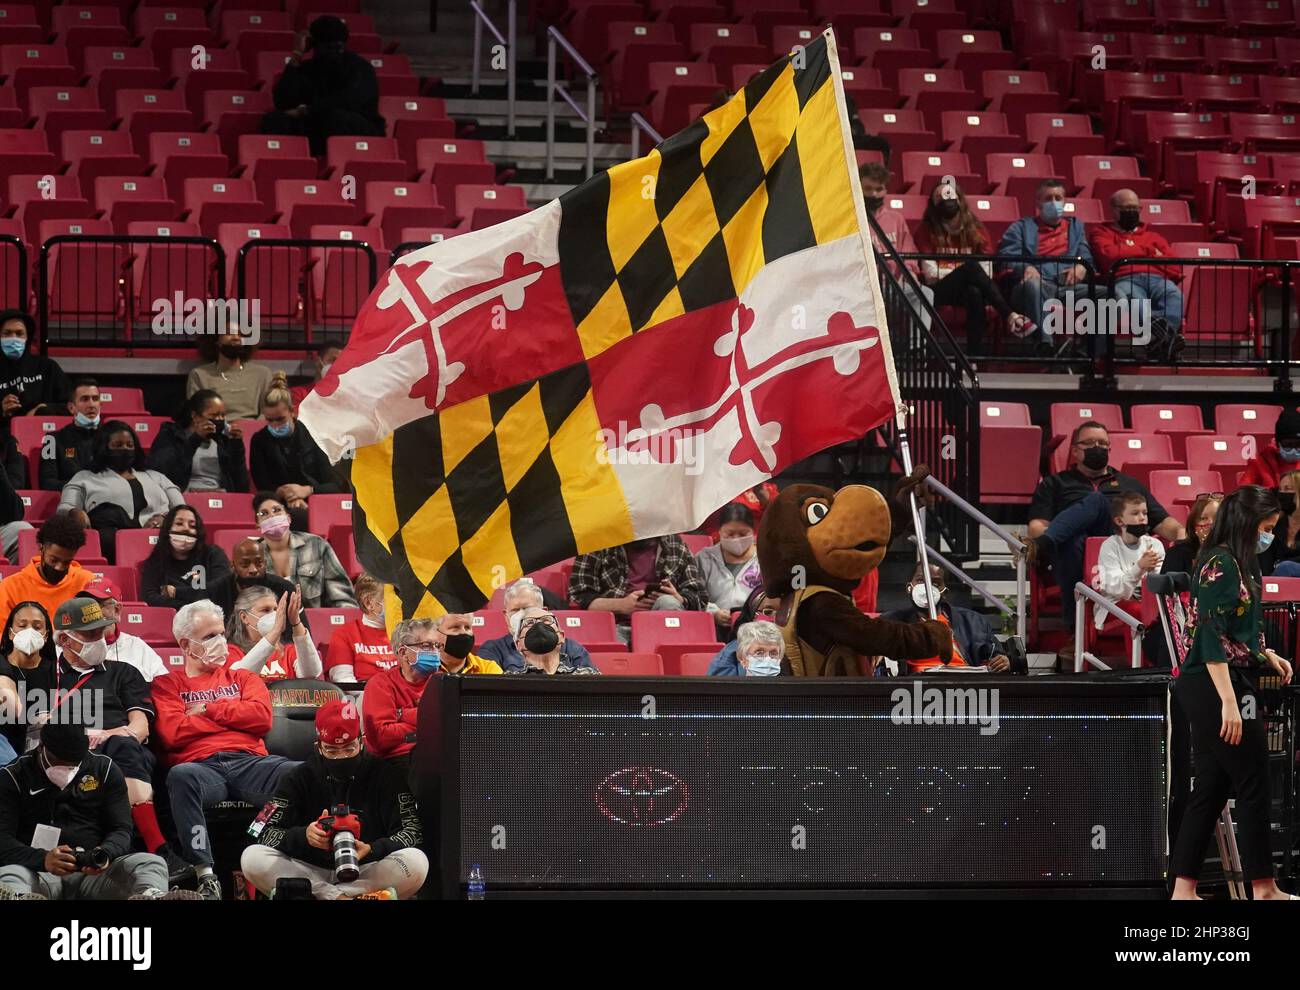 COLLEGE PARK, MD - FÉVRIER 17: La mascotte du Maryland Testudo porte le drapeau de l'État du Maryland autour du terrain pendant un match de basket-ball de Big10 femmes betwee Banque D'Images